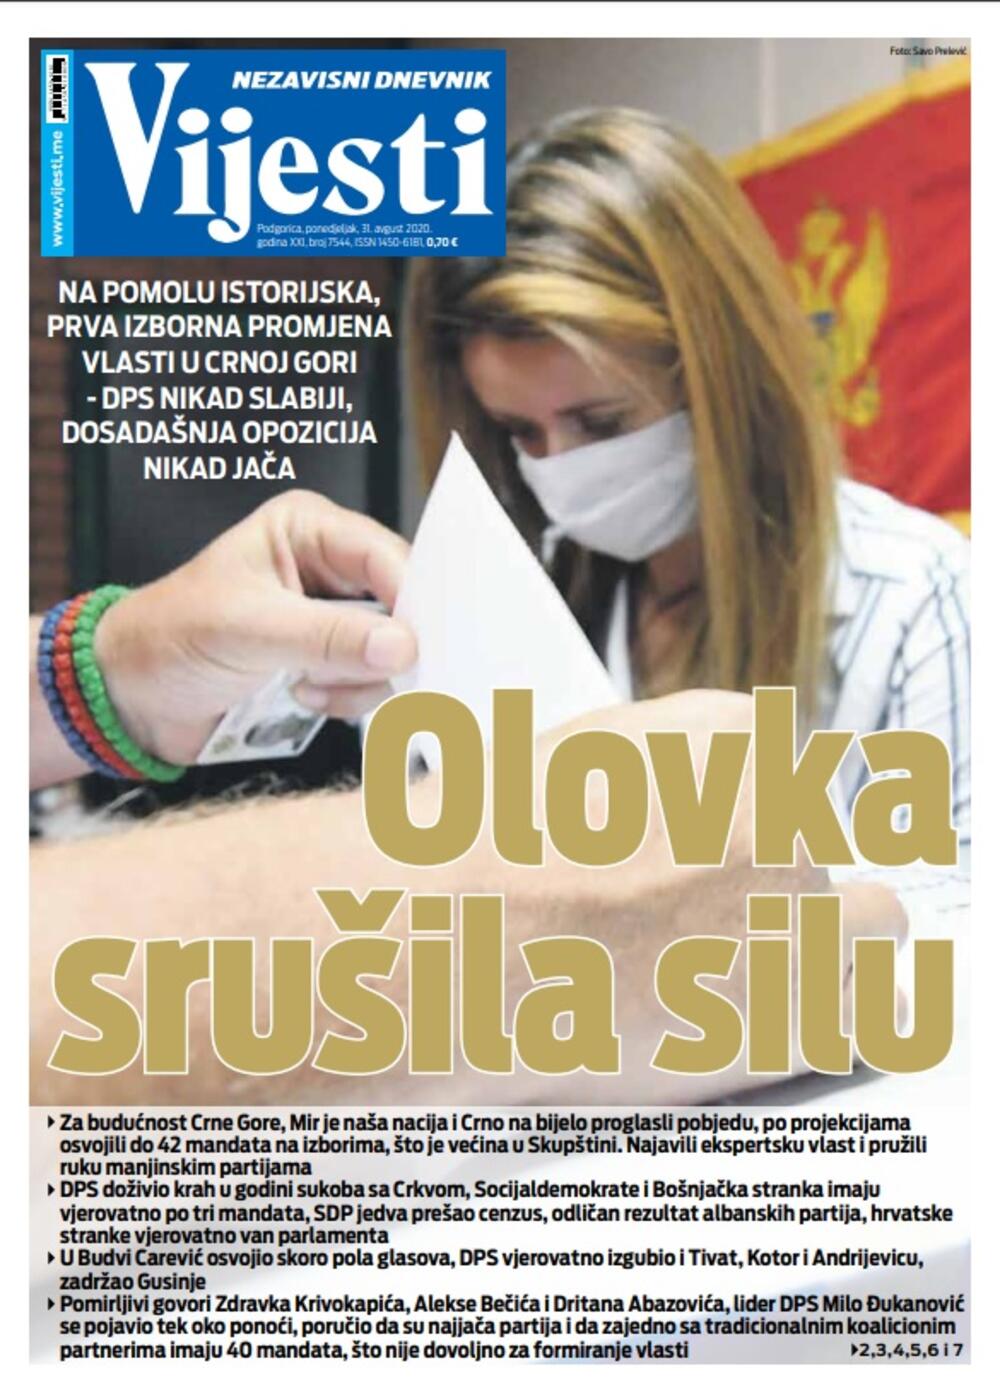 Naslovna strana "Vijesti" za 31. avgust, Foto: Vijesti